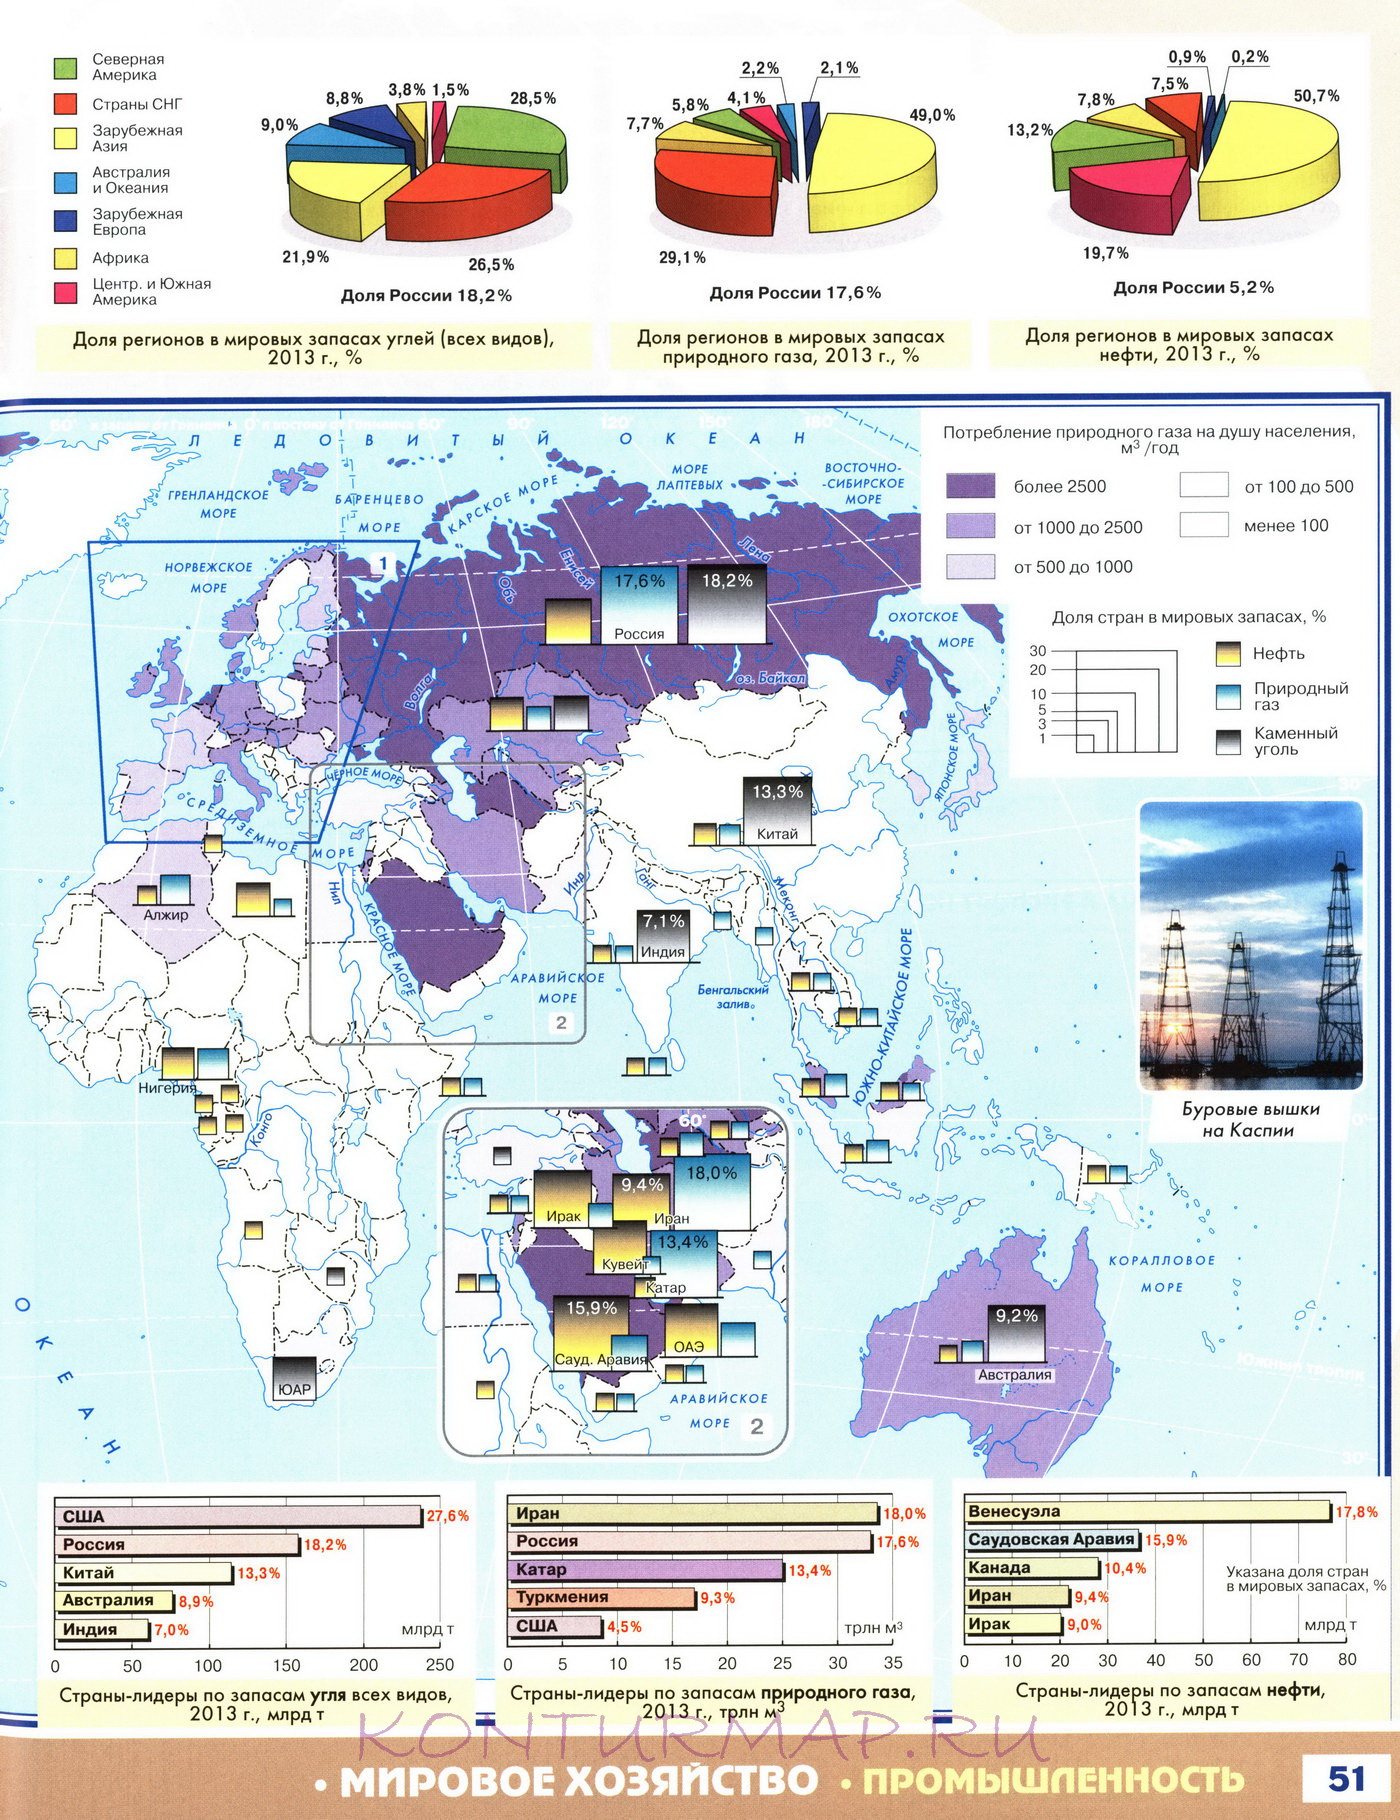 Дэниел ергин новая карта мира энергетические ресурсы меняющийся климат и столкновение наций